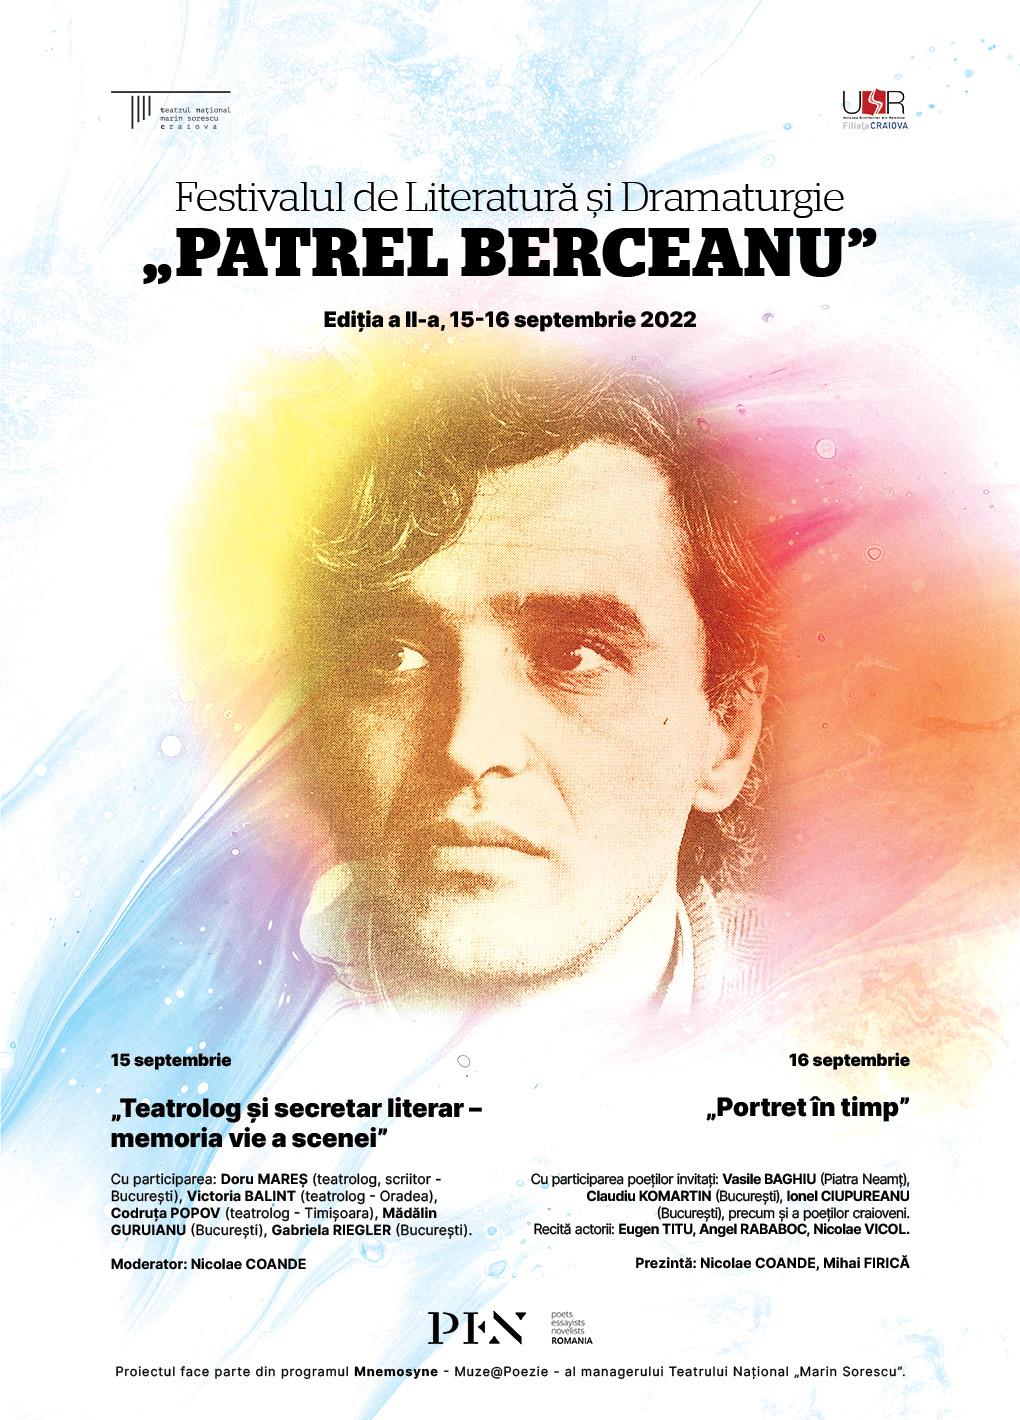 Festivalul de literatură Patrel Berceanu – ediția a II-a, 2022, Craiova, 15-16 septembrie